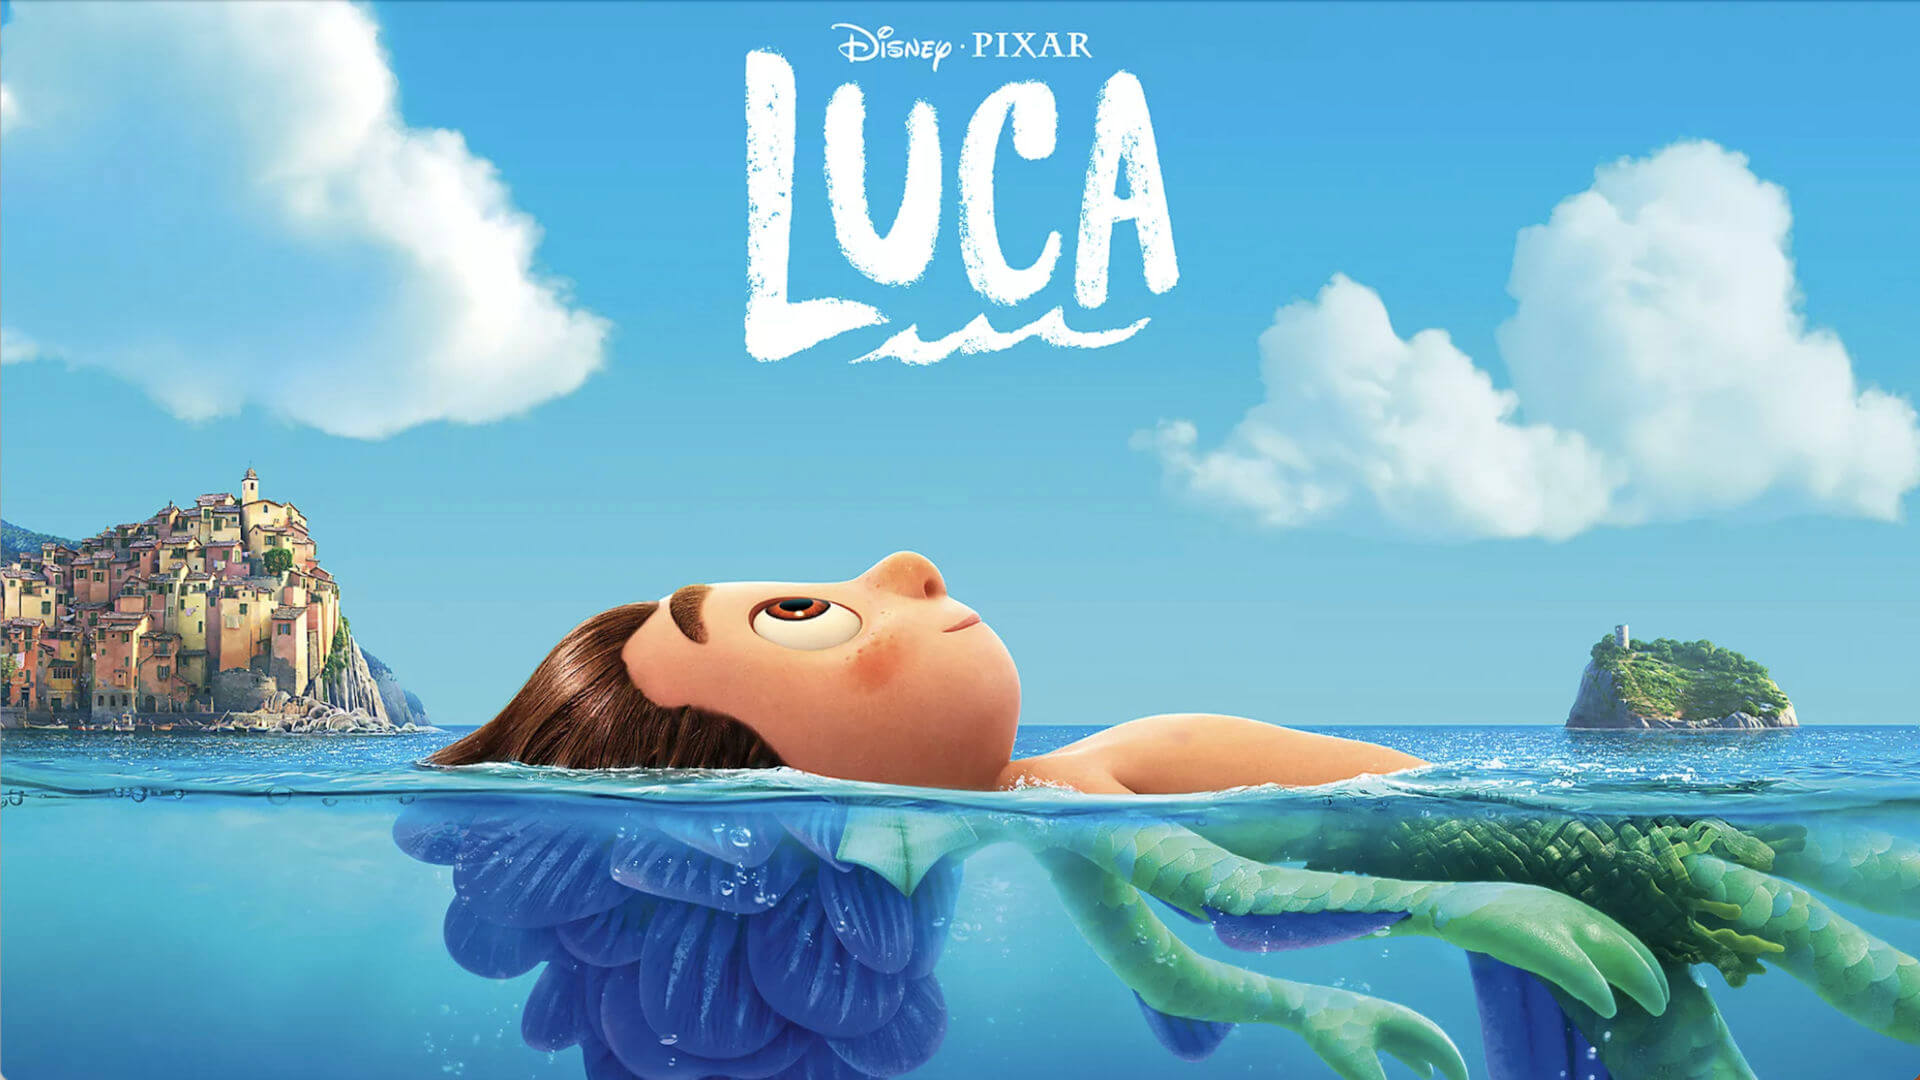 Pixar Luca Movie 2021 Wallpapers